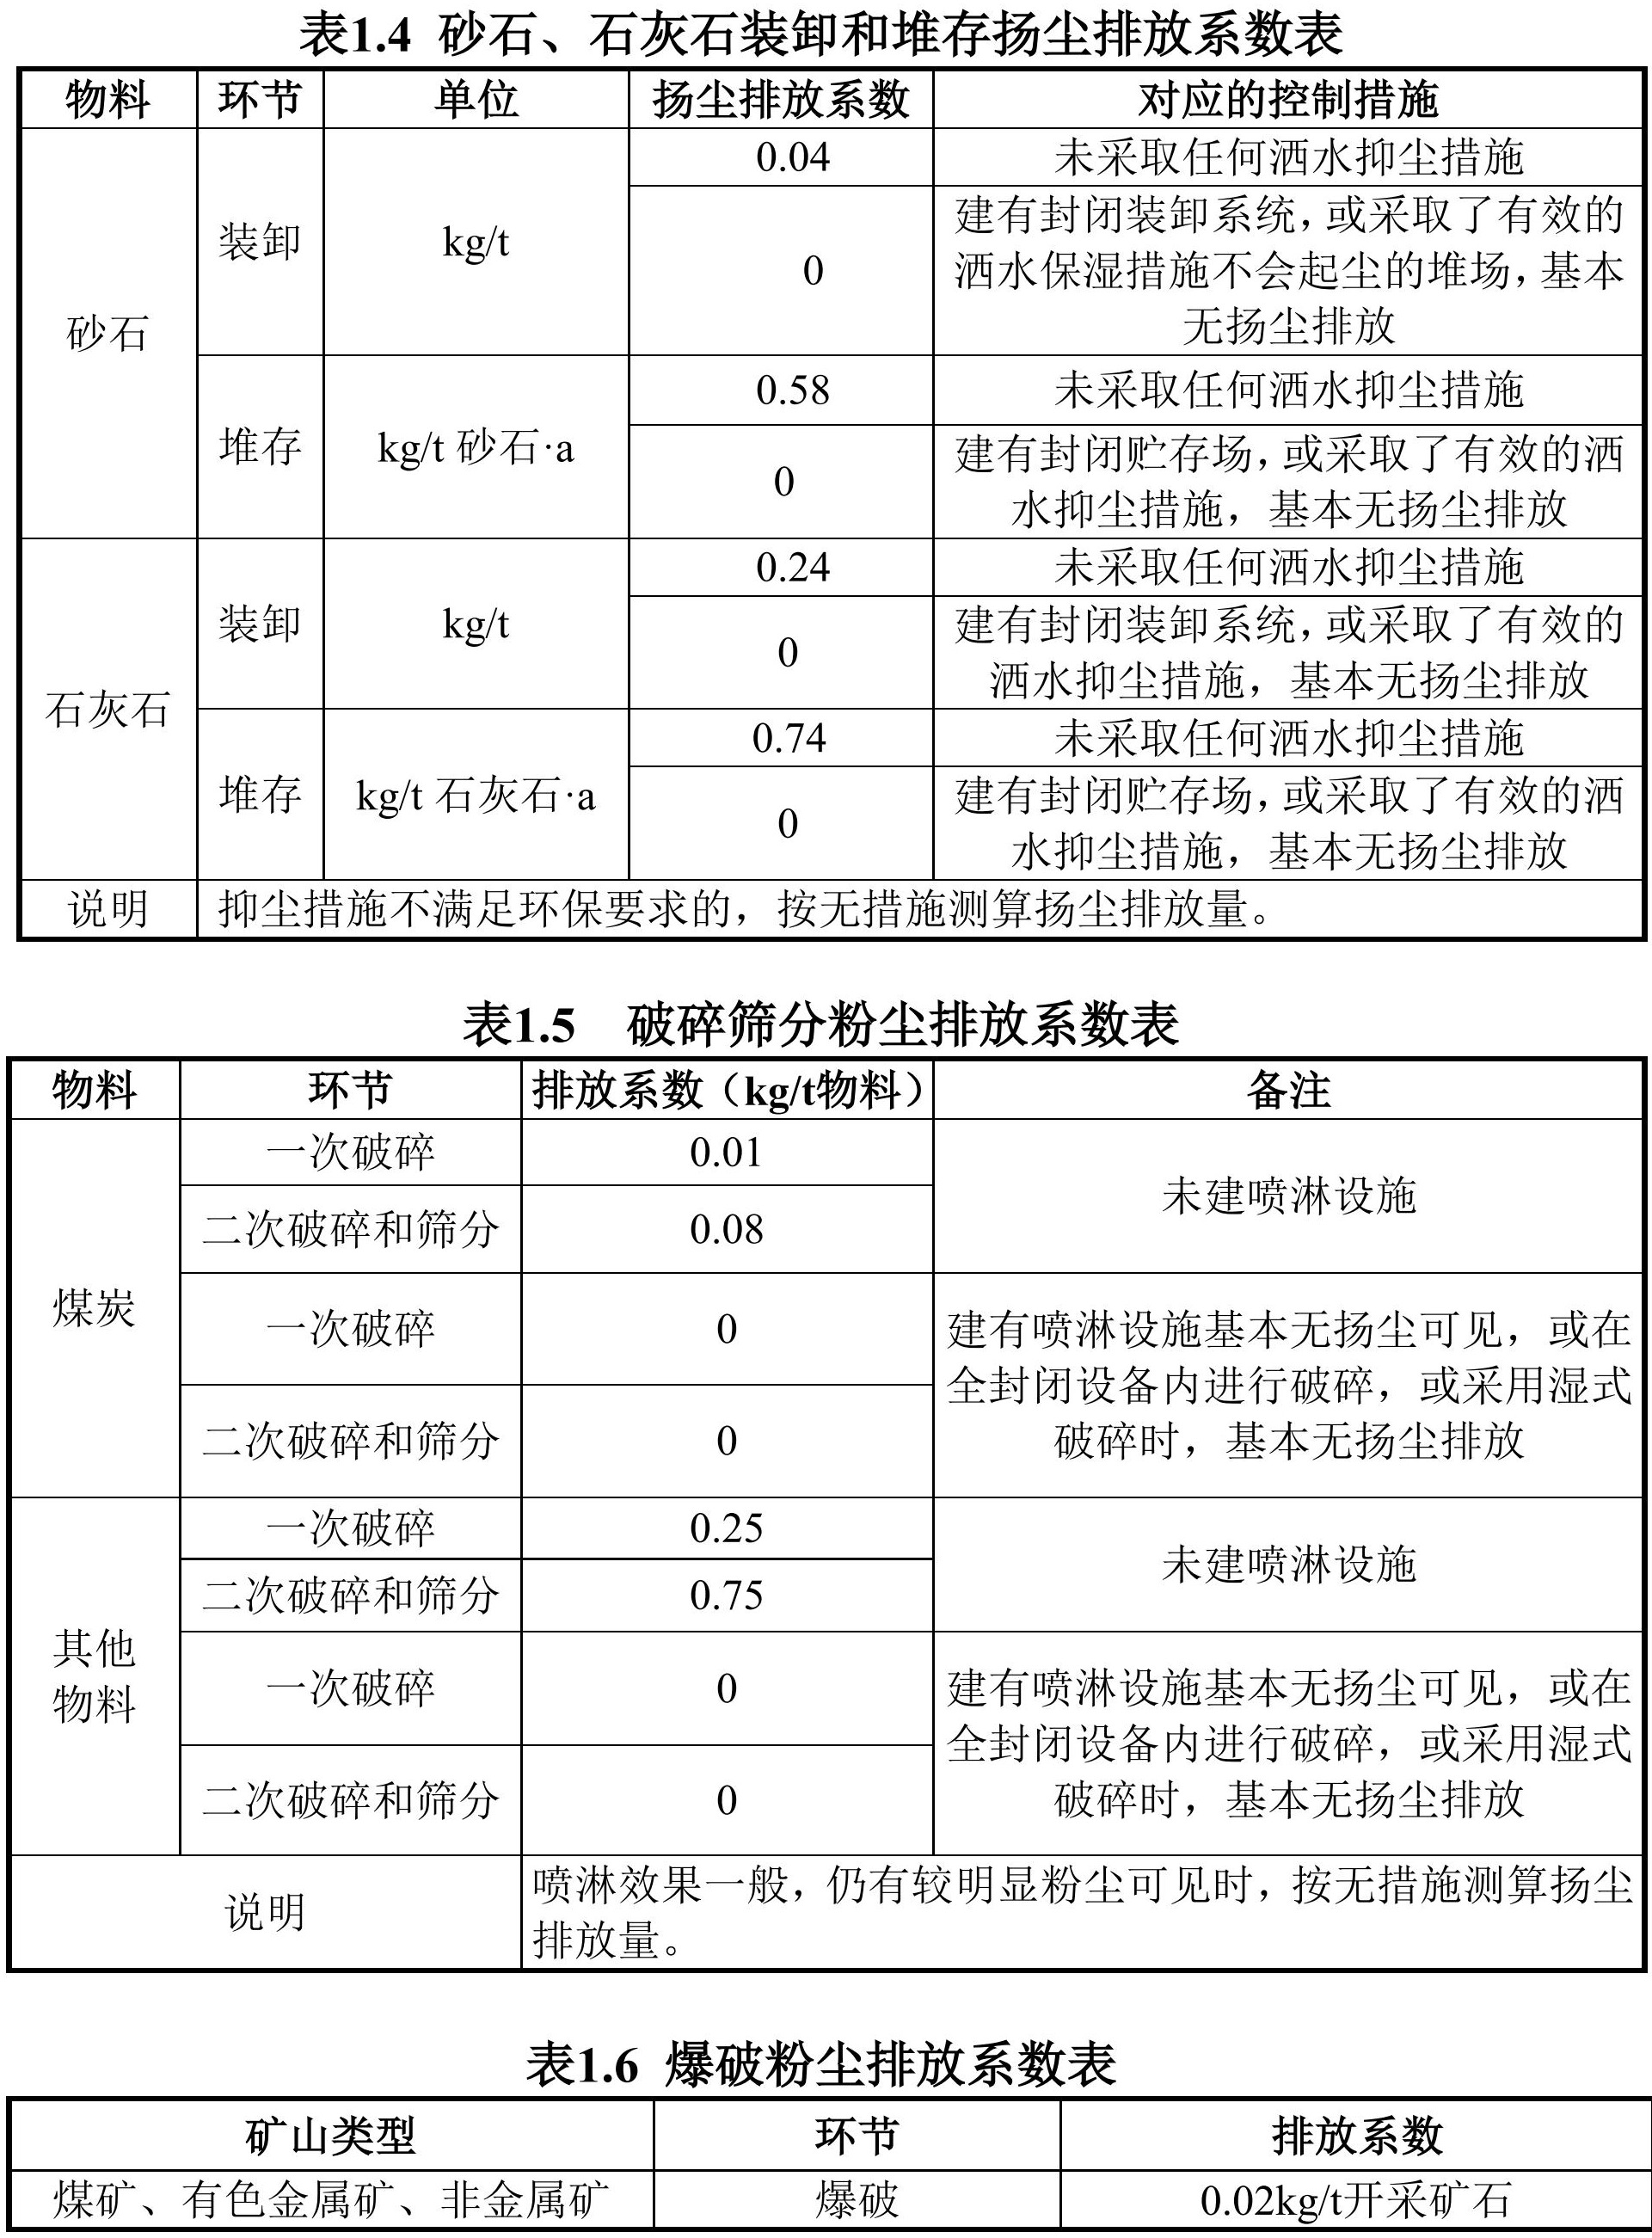 青海发布非金属行业环保税应税污染物排放量抽样测算方法（试行）！